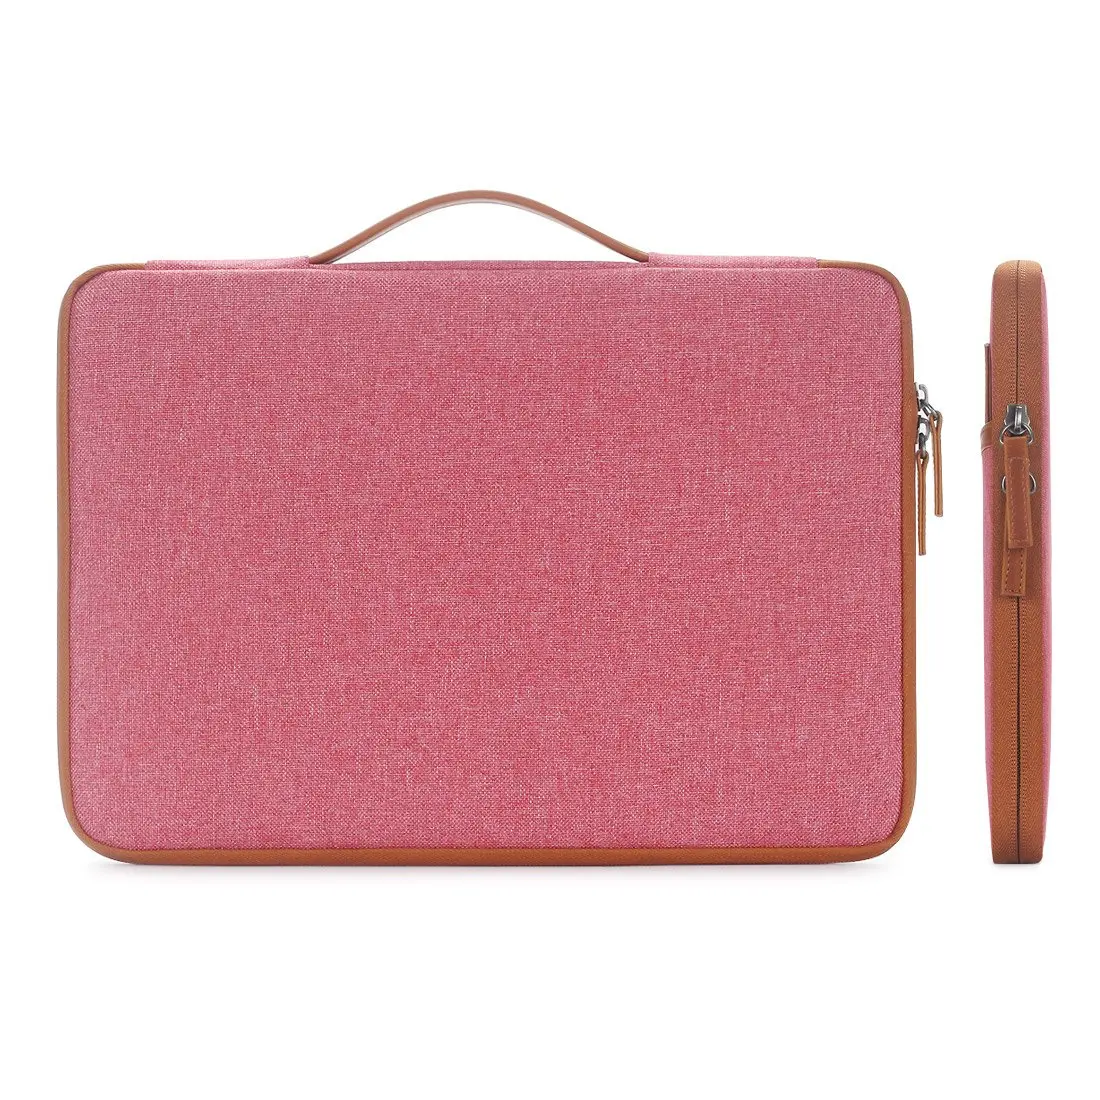 DOMISO 10 11 13 14 15,6 дюймов чехол для ноутбука сумка для переноски женская сумка для ноутбука розовый зеленый оранжевый